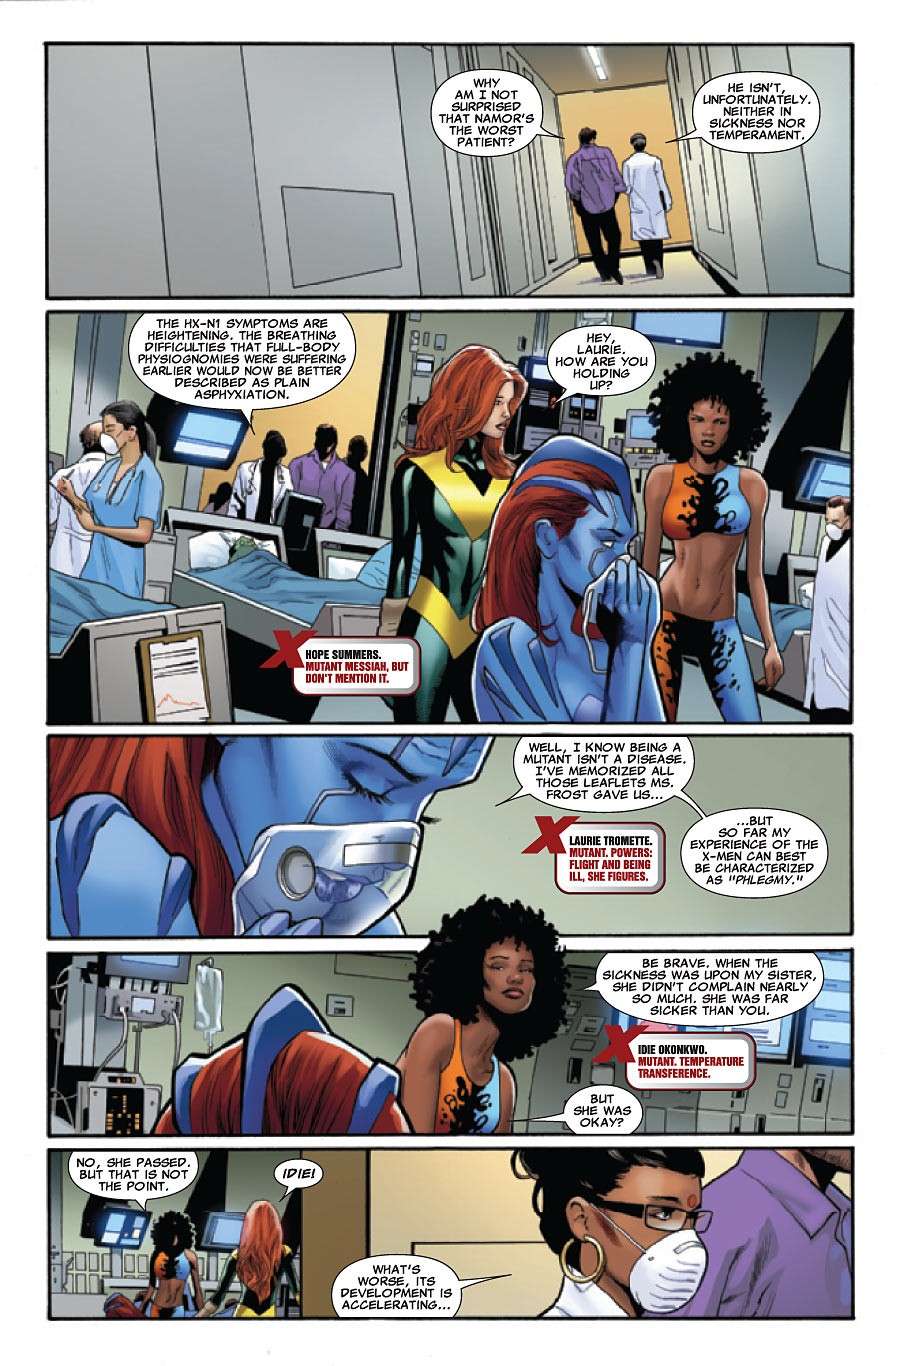 Uncanny X-Men #531 (Cover) Prv72733